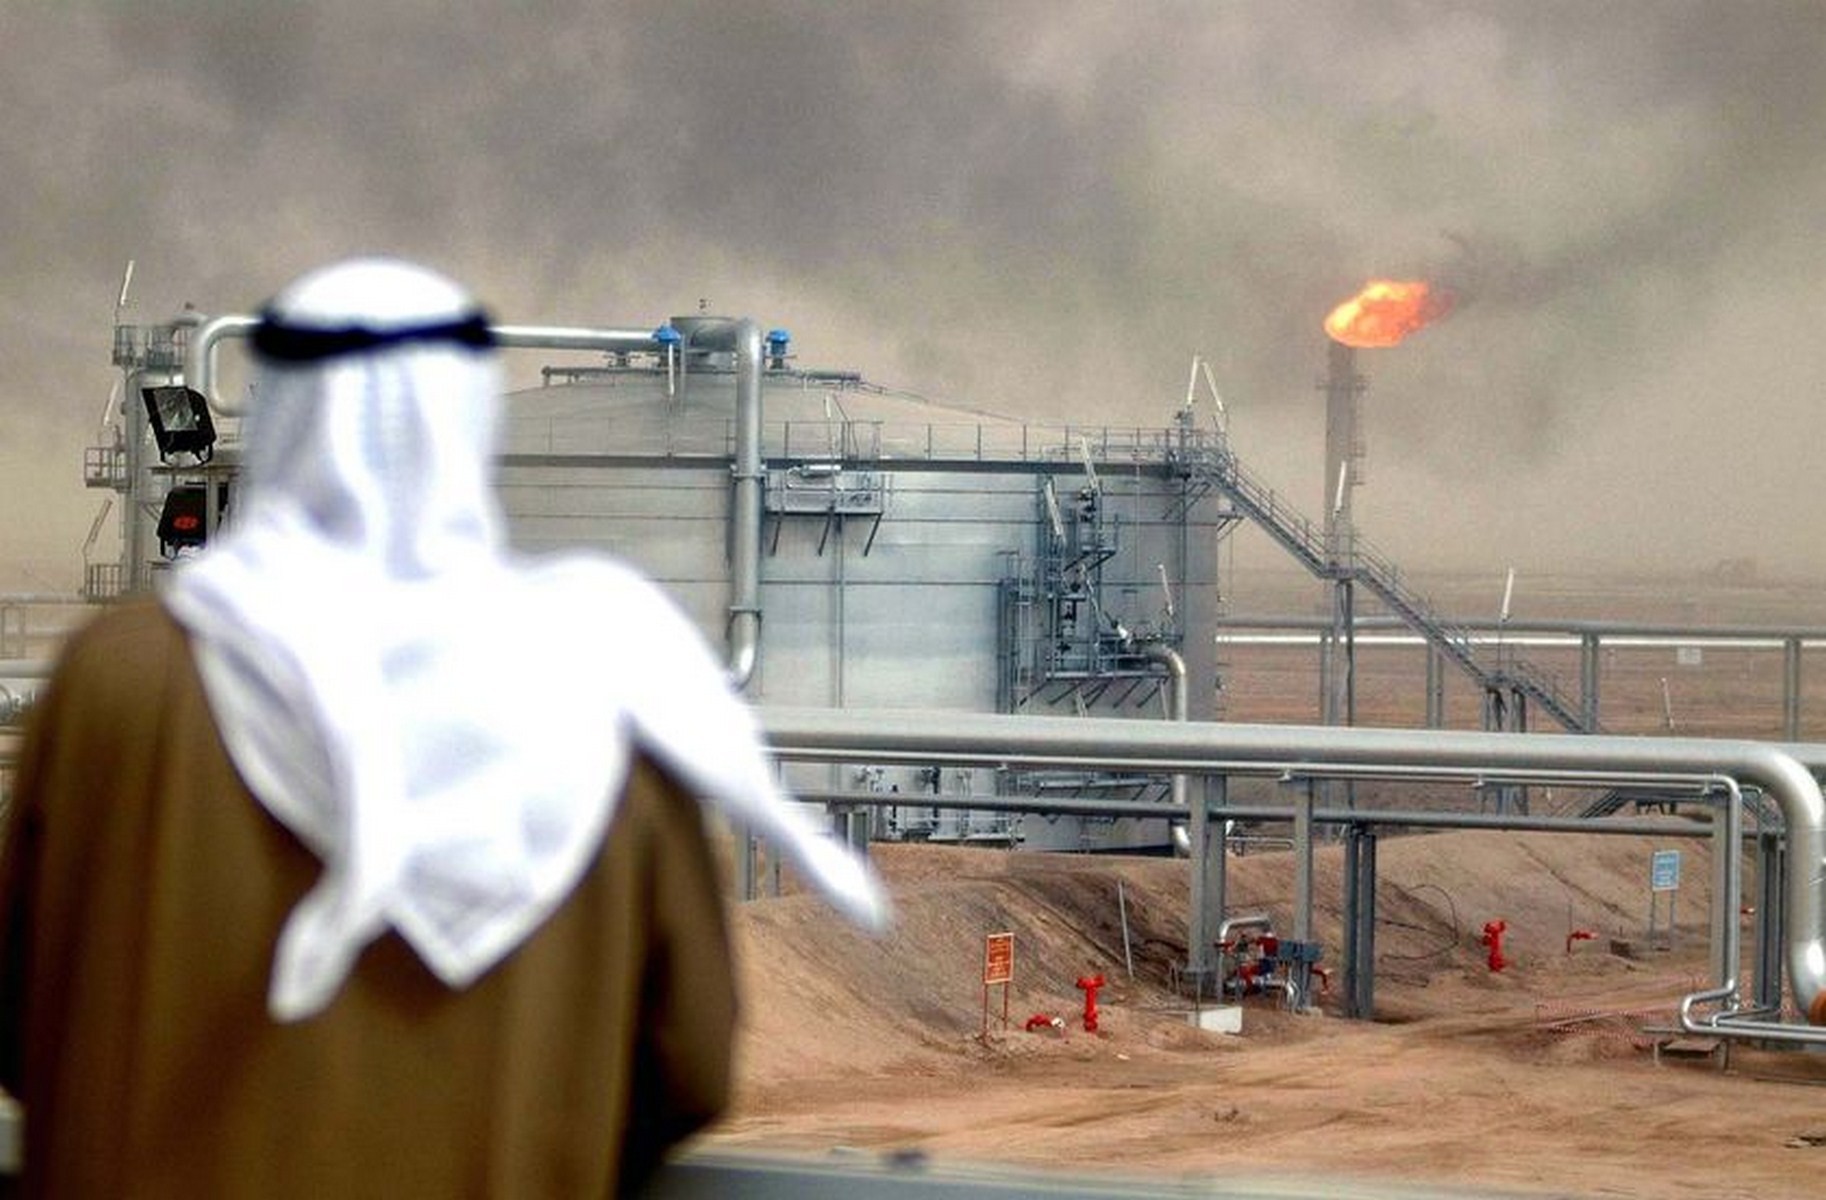 Завод Saudi Aramco под Эр-Риядом возобновил работу спустя часы после атаки хуситов